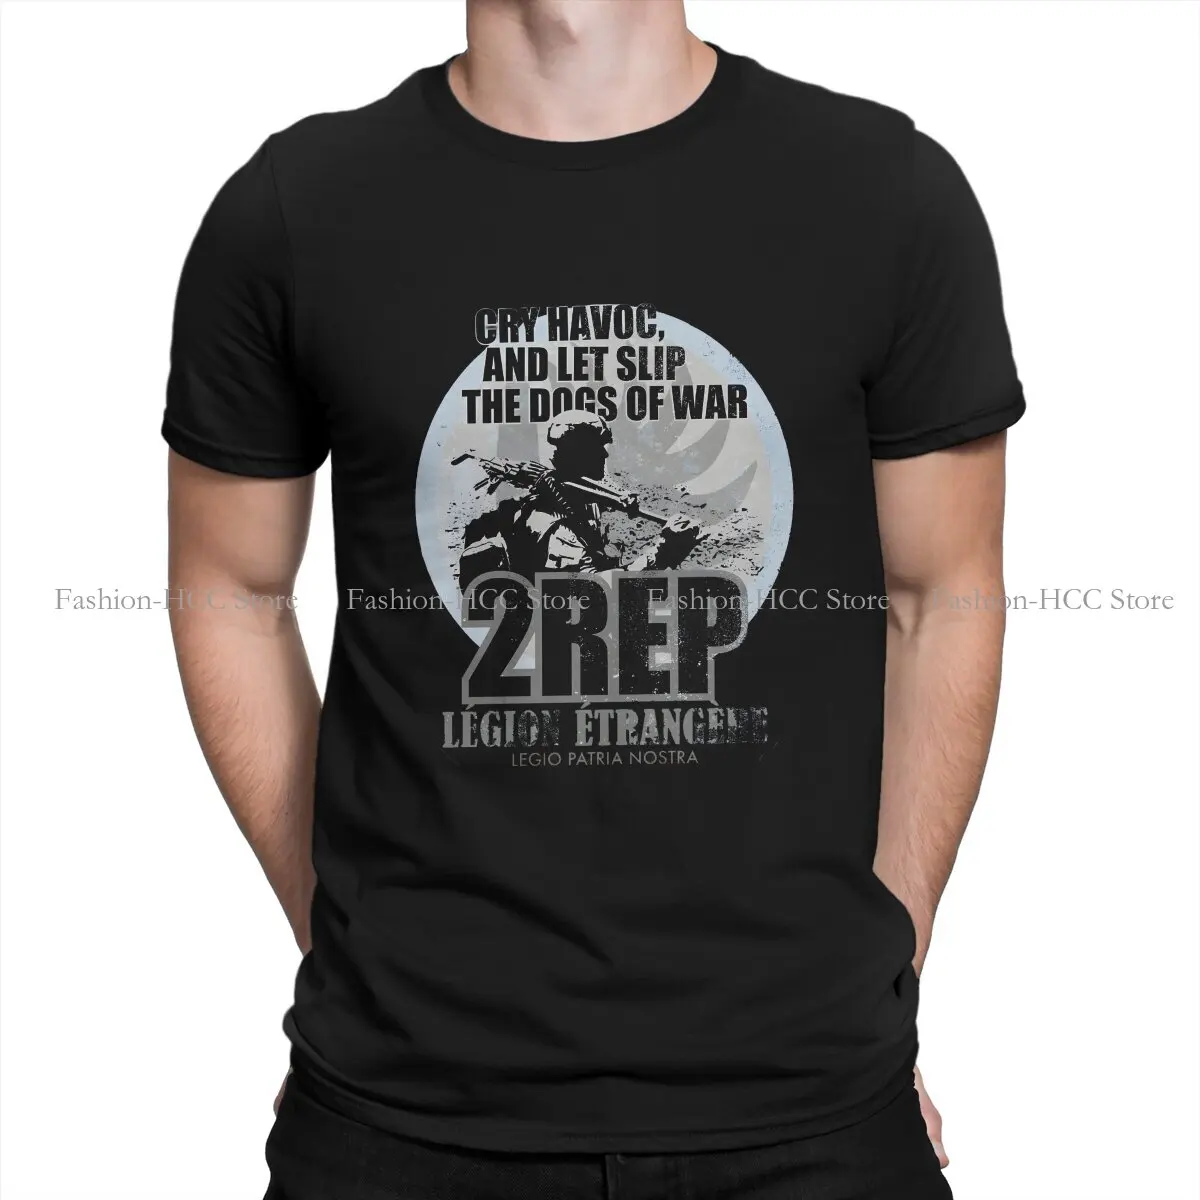 

Уникальная футболка из полиэстера CRY HAVOC, футболка с изображением легиона эрекро, Иностранного легиона, Высококачественная футболка с графическим принтом в стиле хип-хоп